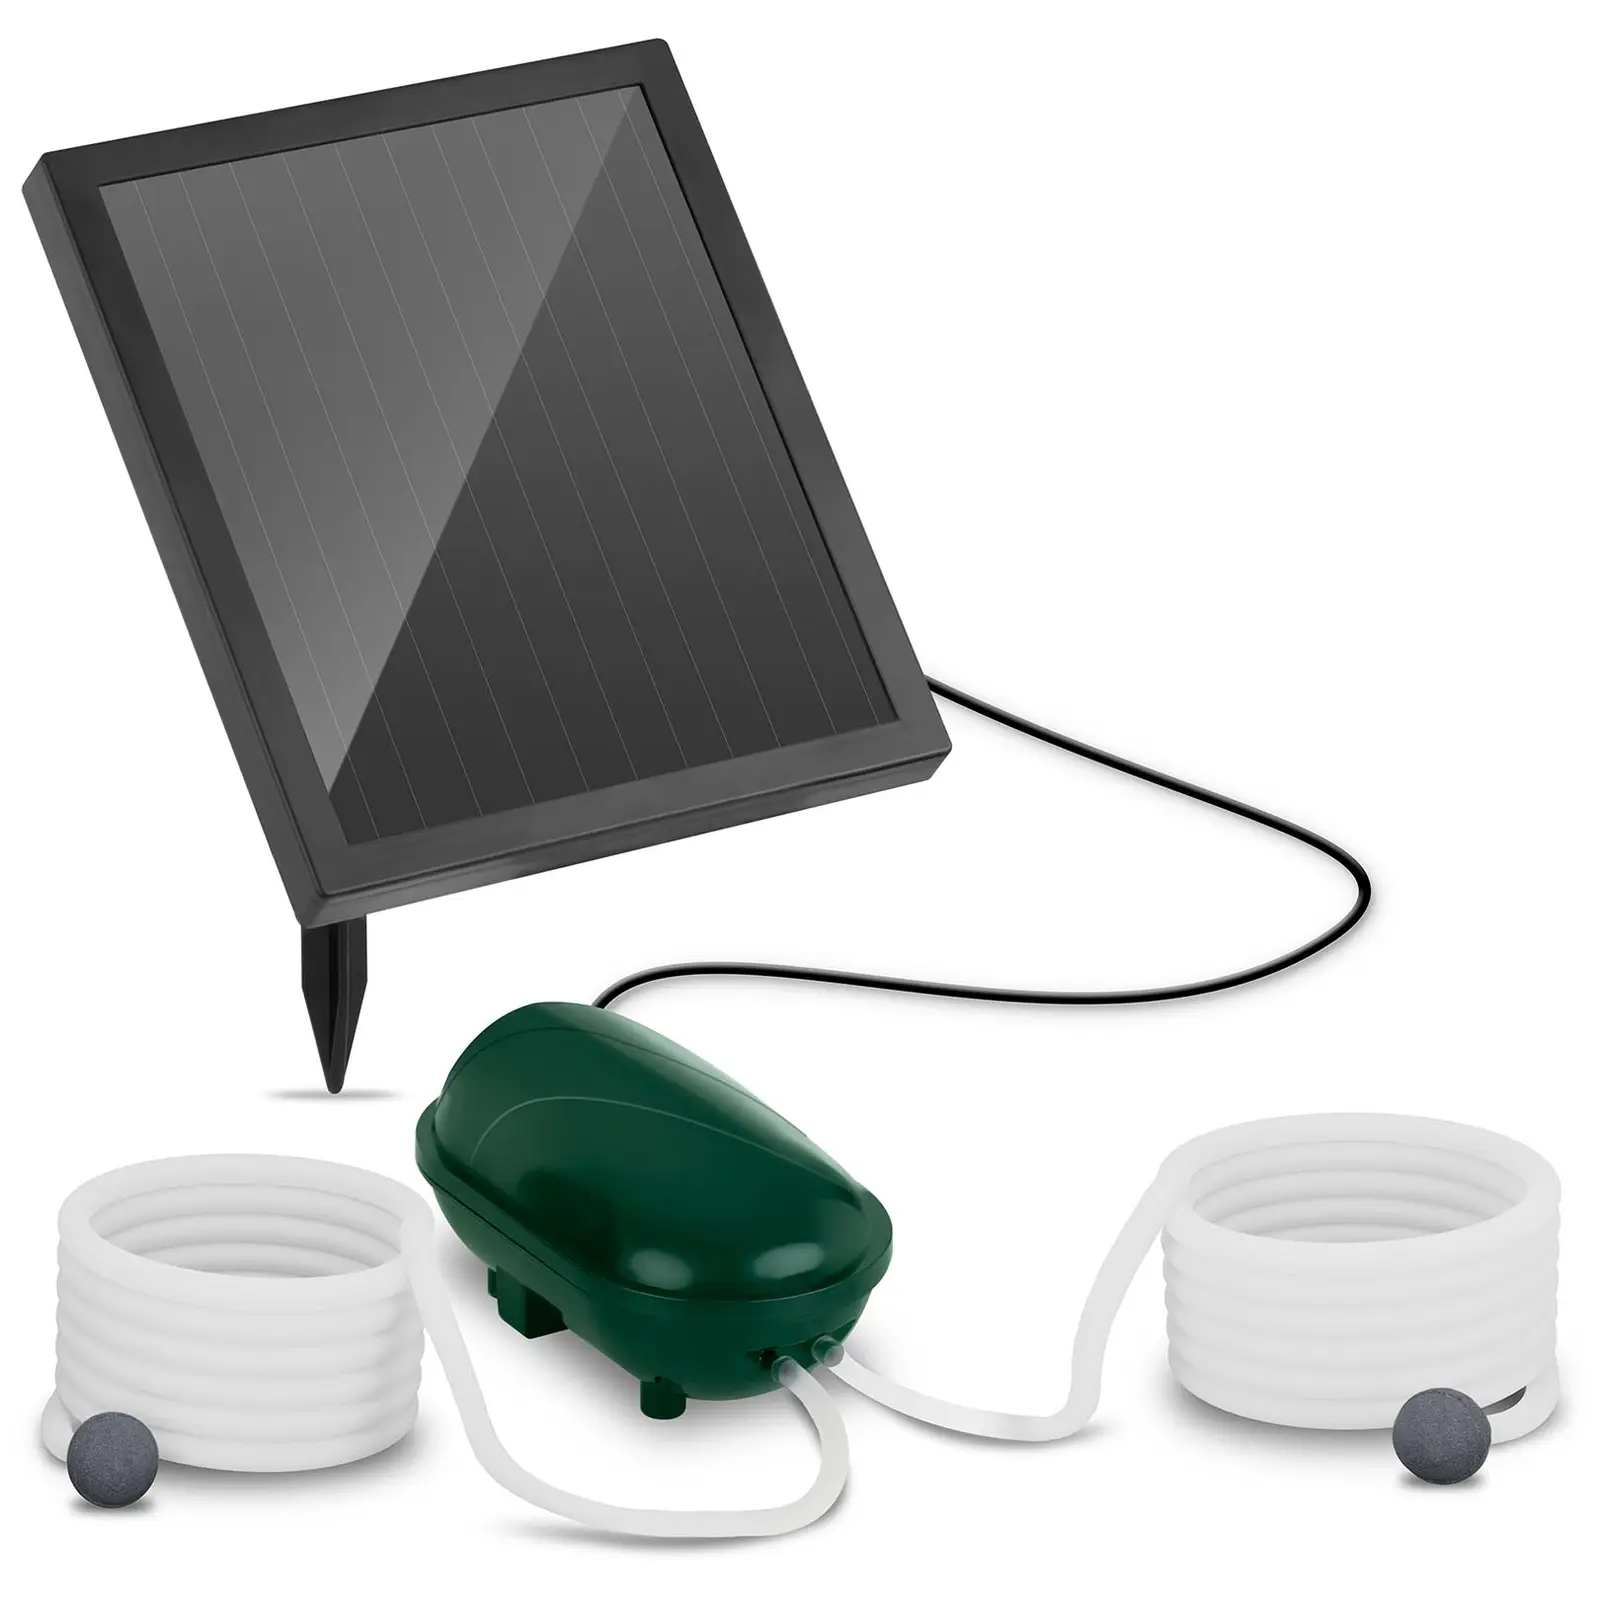 Pompe à air solaire pour bassin - 2 pierres d’oxygénation - 200 l/h - Batterie